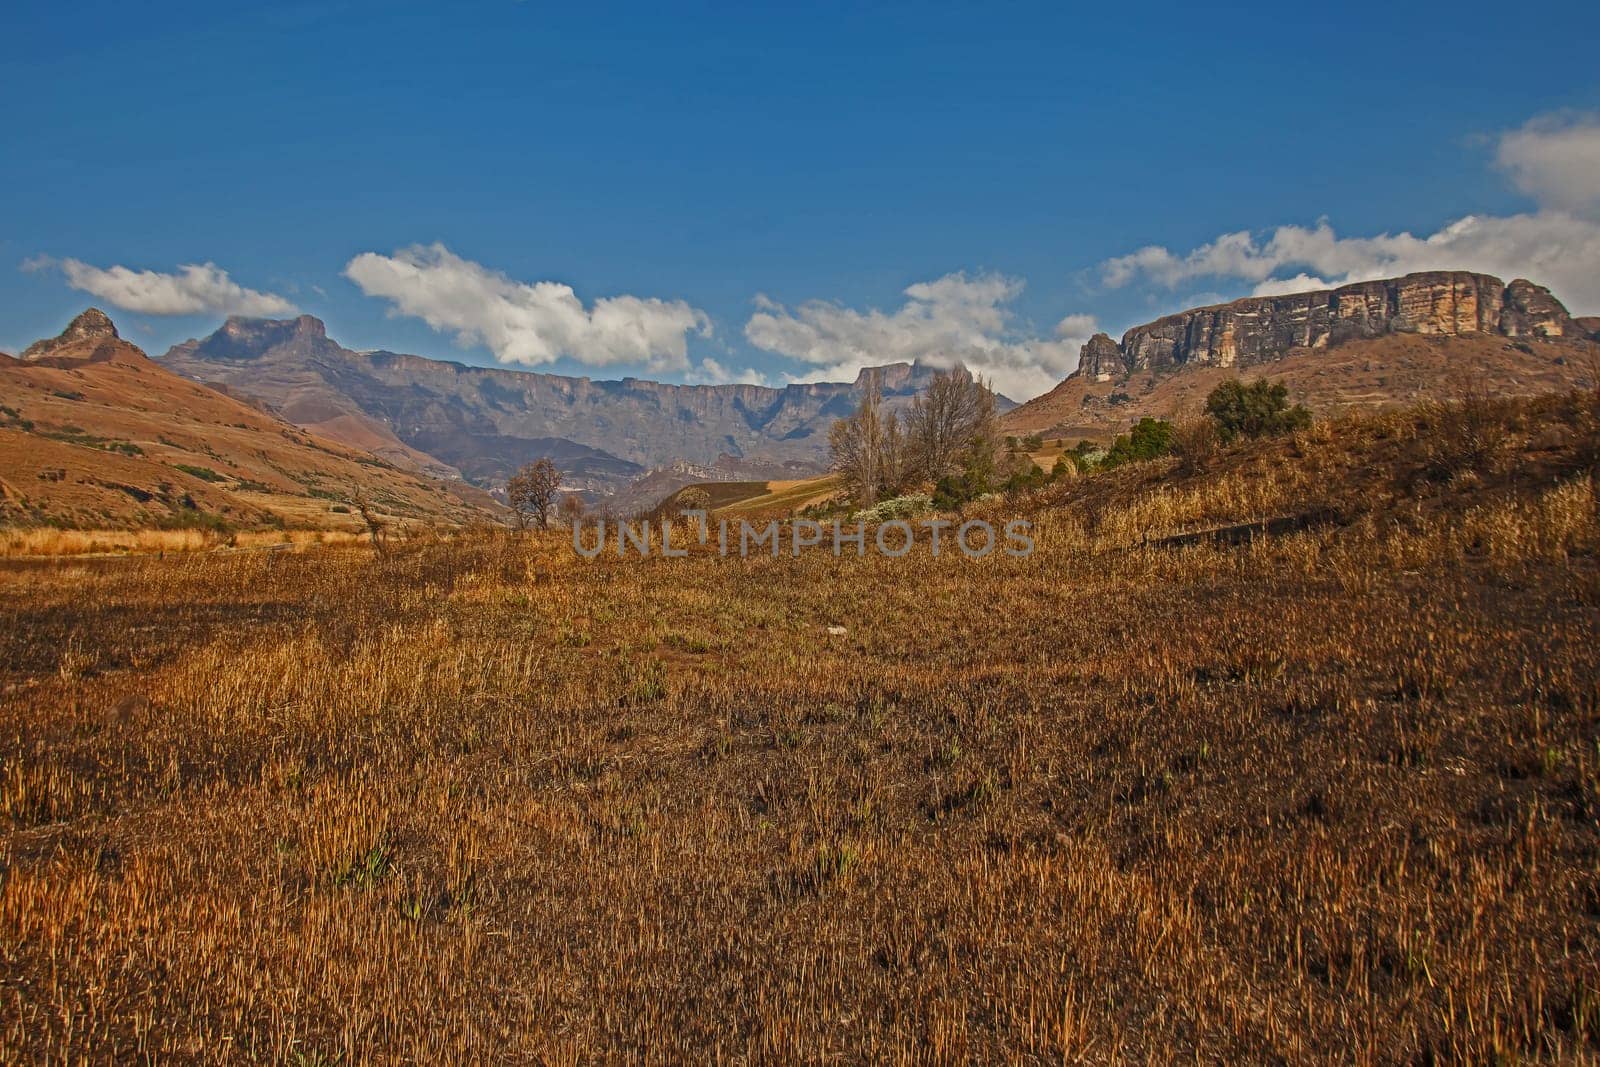 Drakensberg Mountain scene 15607 by kobus_peche